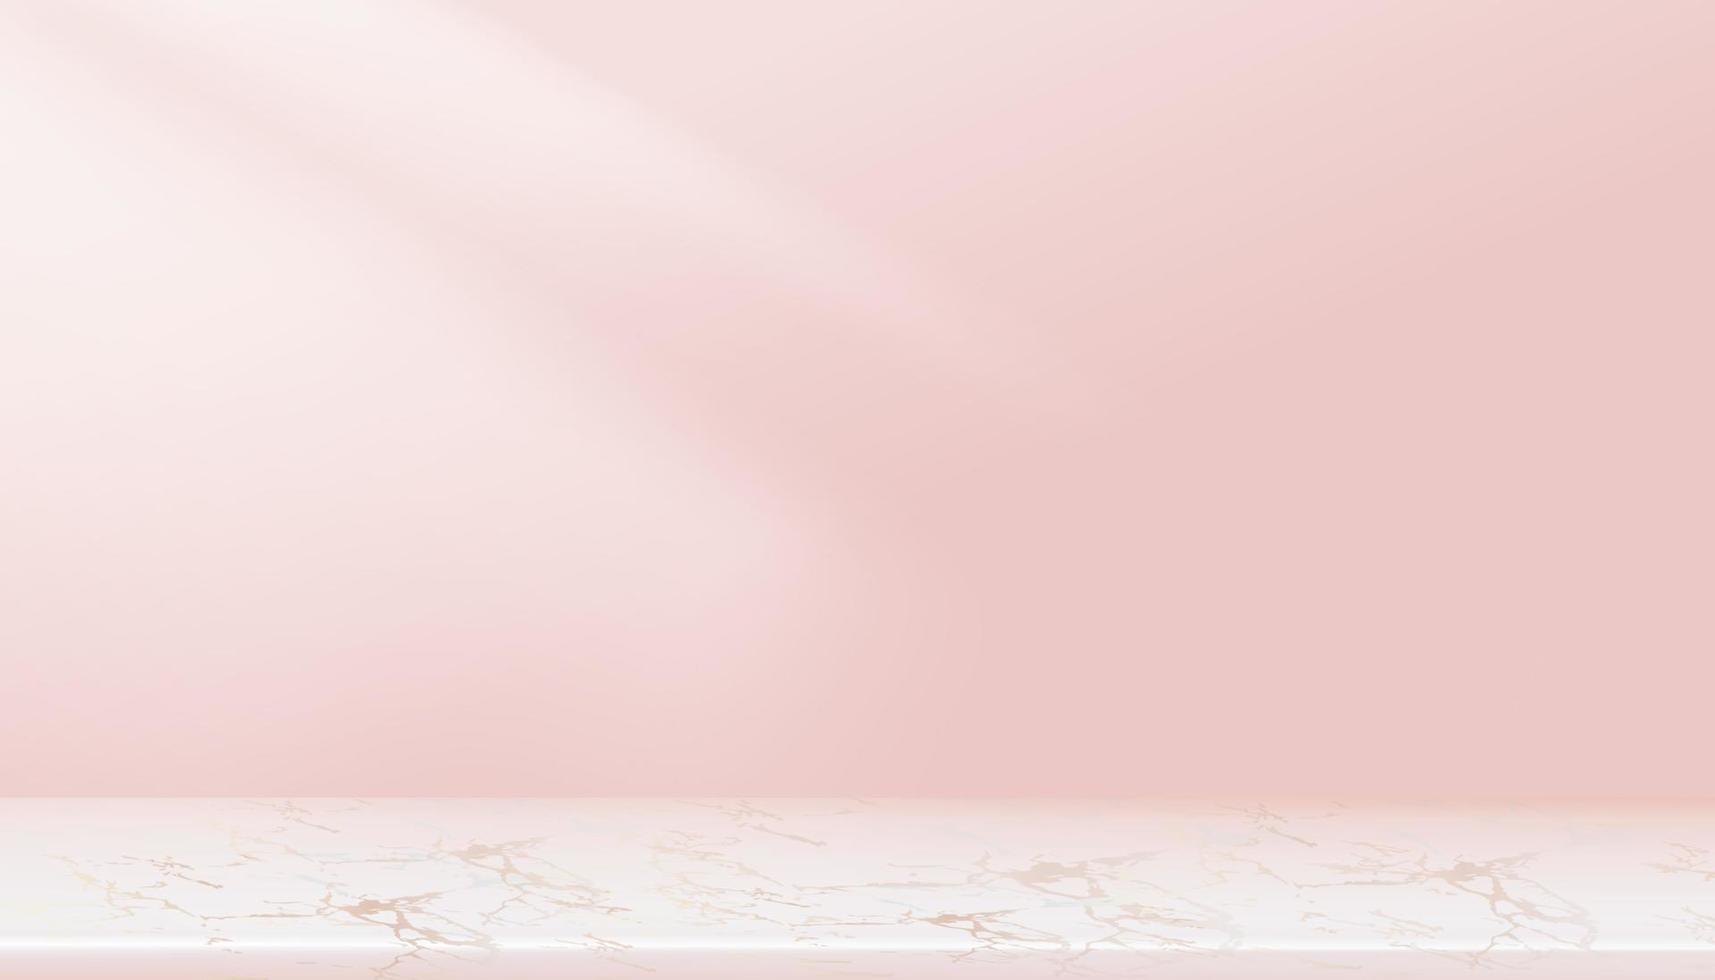 rosa hintergrund leerer raum, display 3d studio mit regal. rosa pastellgalerie raum mit kopierraum, luxuriöses minimales design für hintergrundaufnahmen für kosmetik, spa oder winter, neujahrsverkaufsförderung vektor